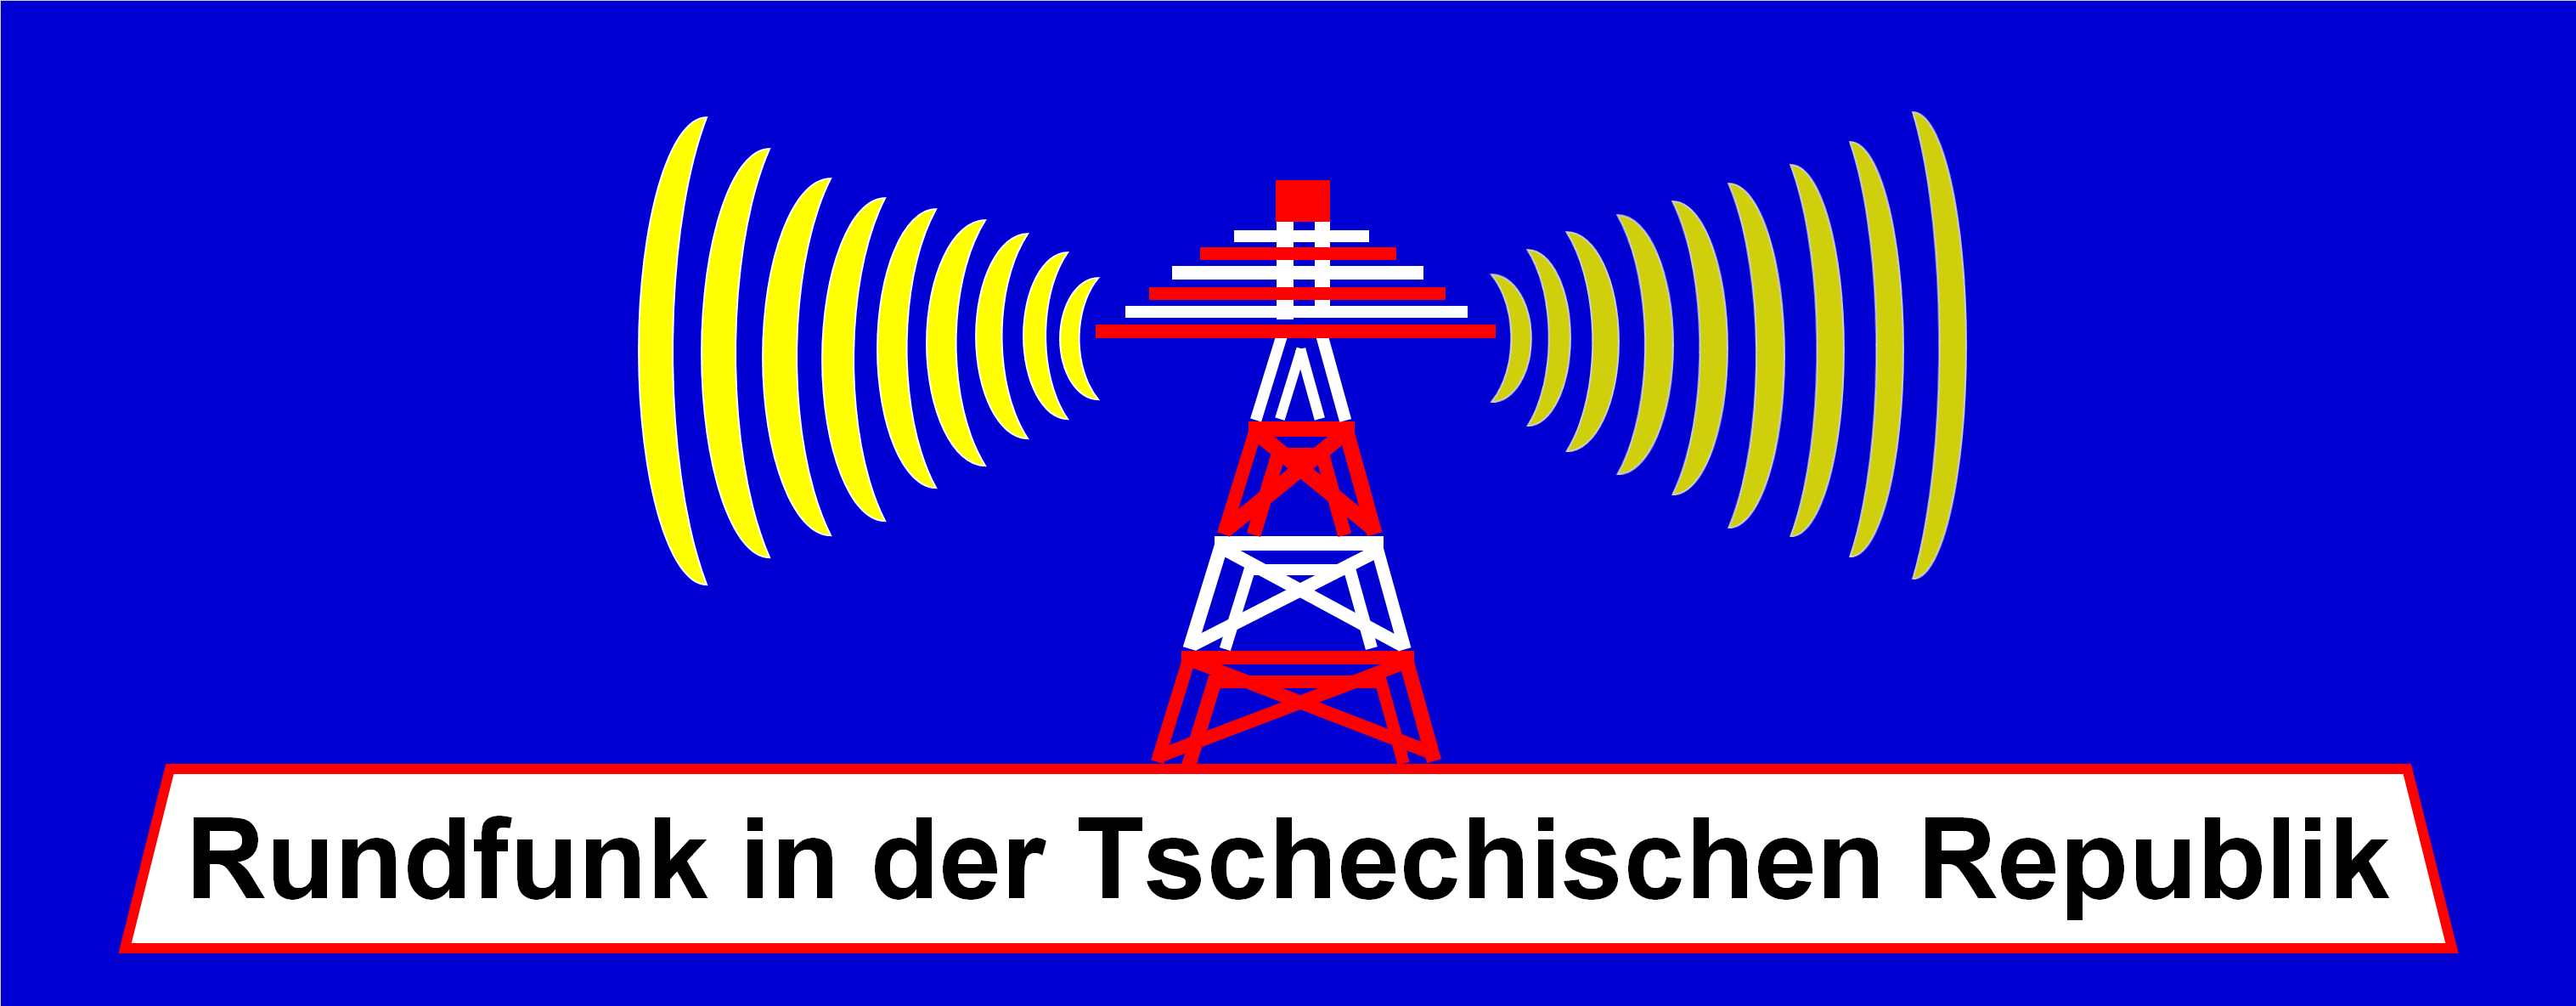 Rundfunk in der Tschechischen Republik